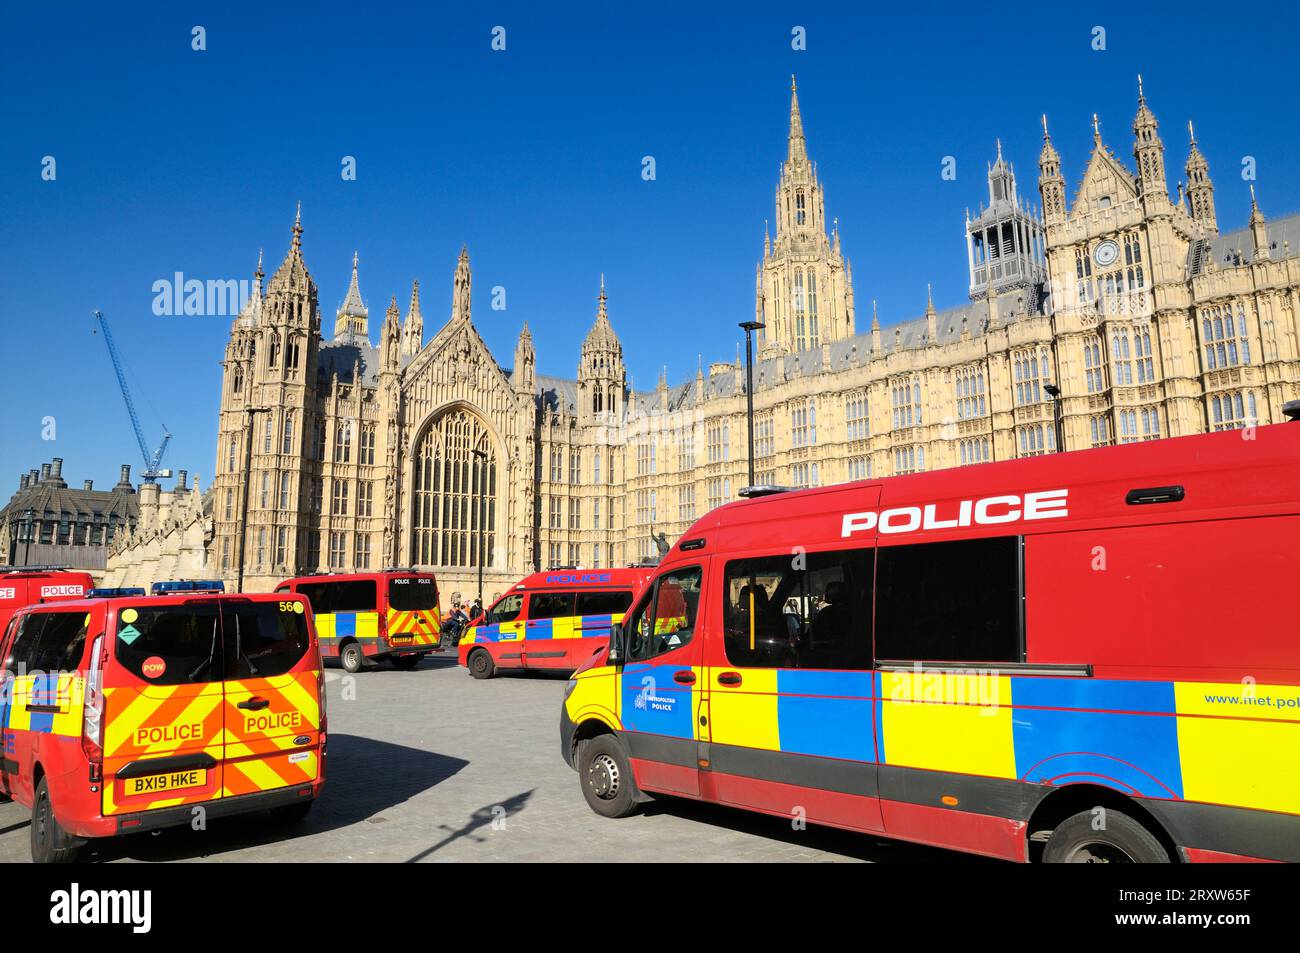 Pulmini Met Police fuori dal Palazzo di Westminster / Houses of Parliament, Londra, Regno Unito. I furgoni rossi sono il gruppo di protezione parlamentare e diplomatica PADP. Foto Stock